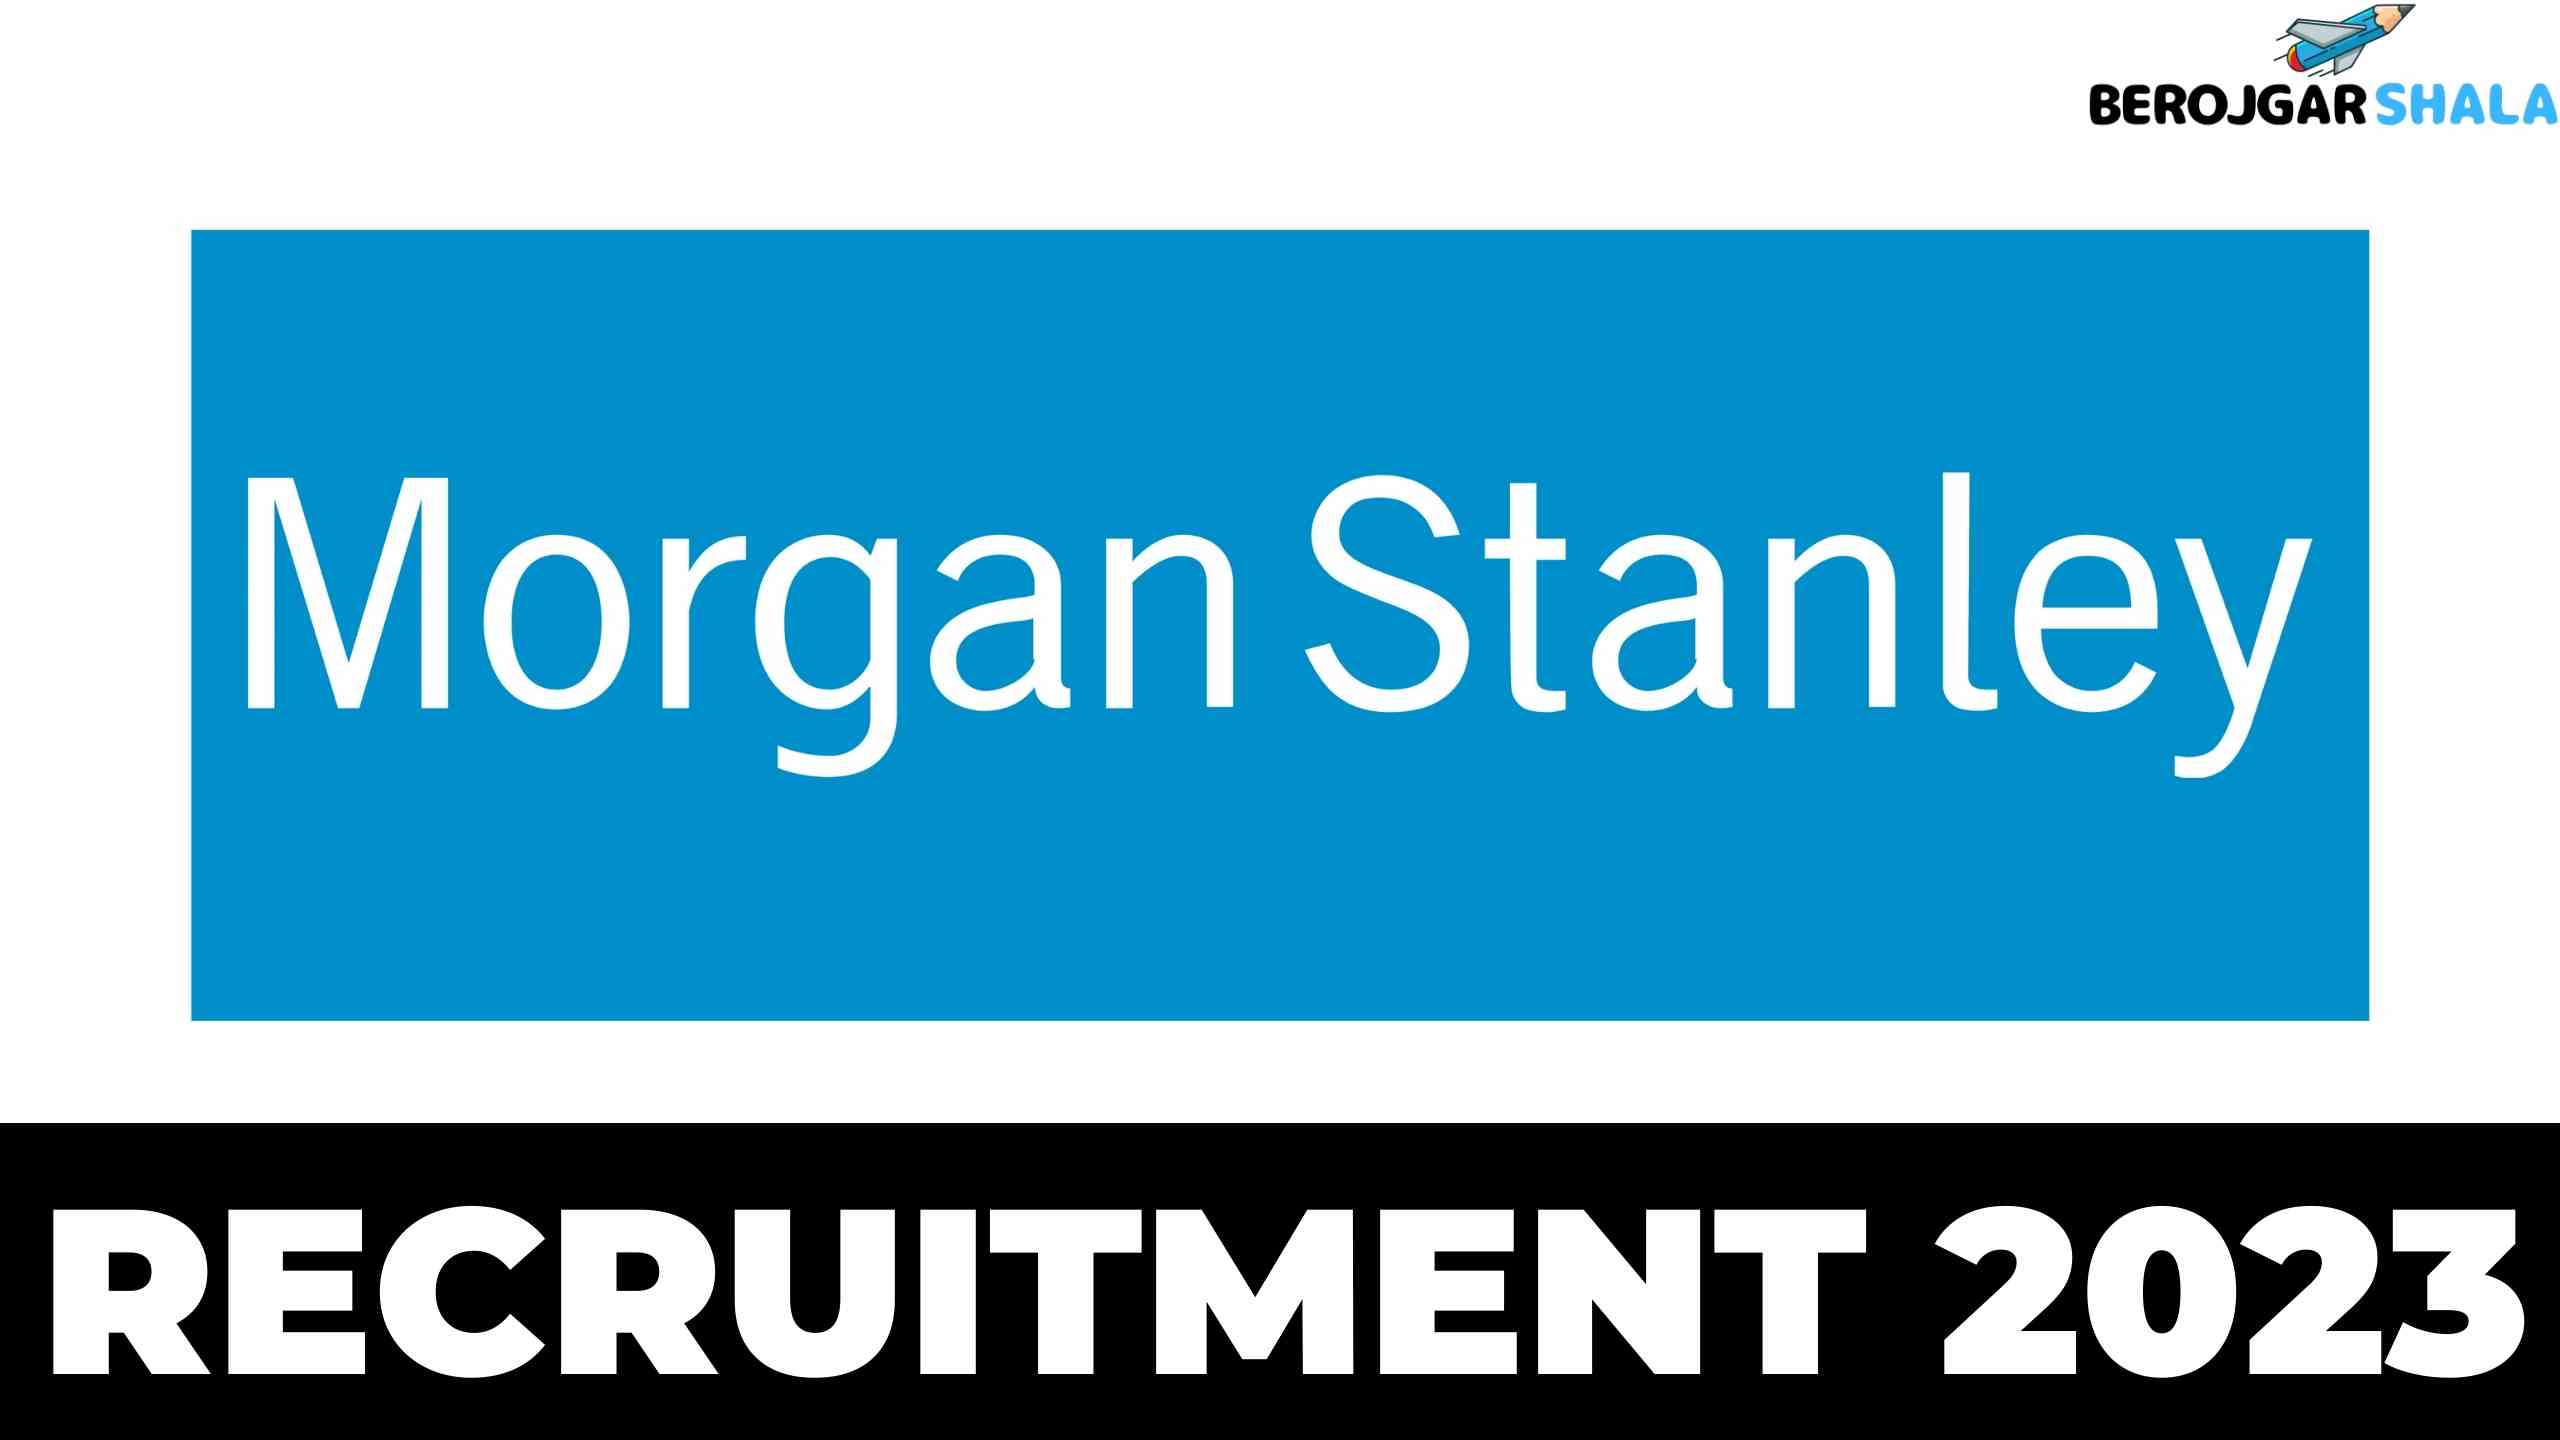 Morgan Stanley Recruitment 2023 - Internship For Freshers berojgarshala